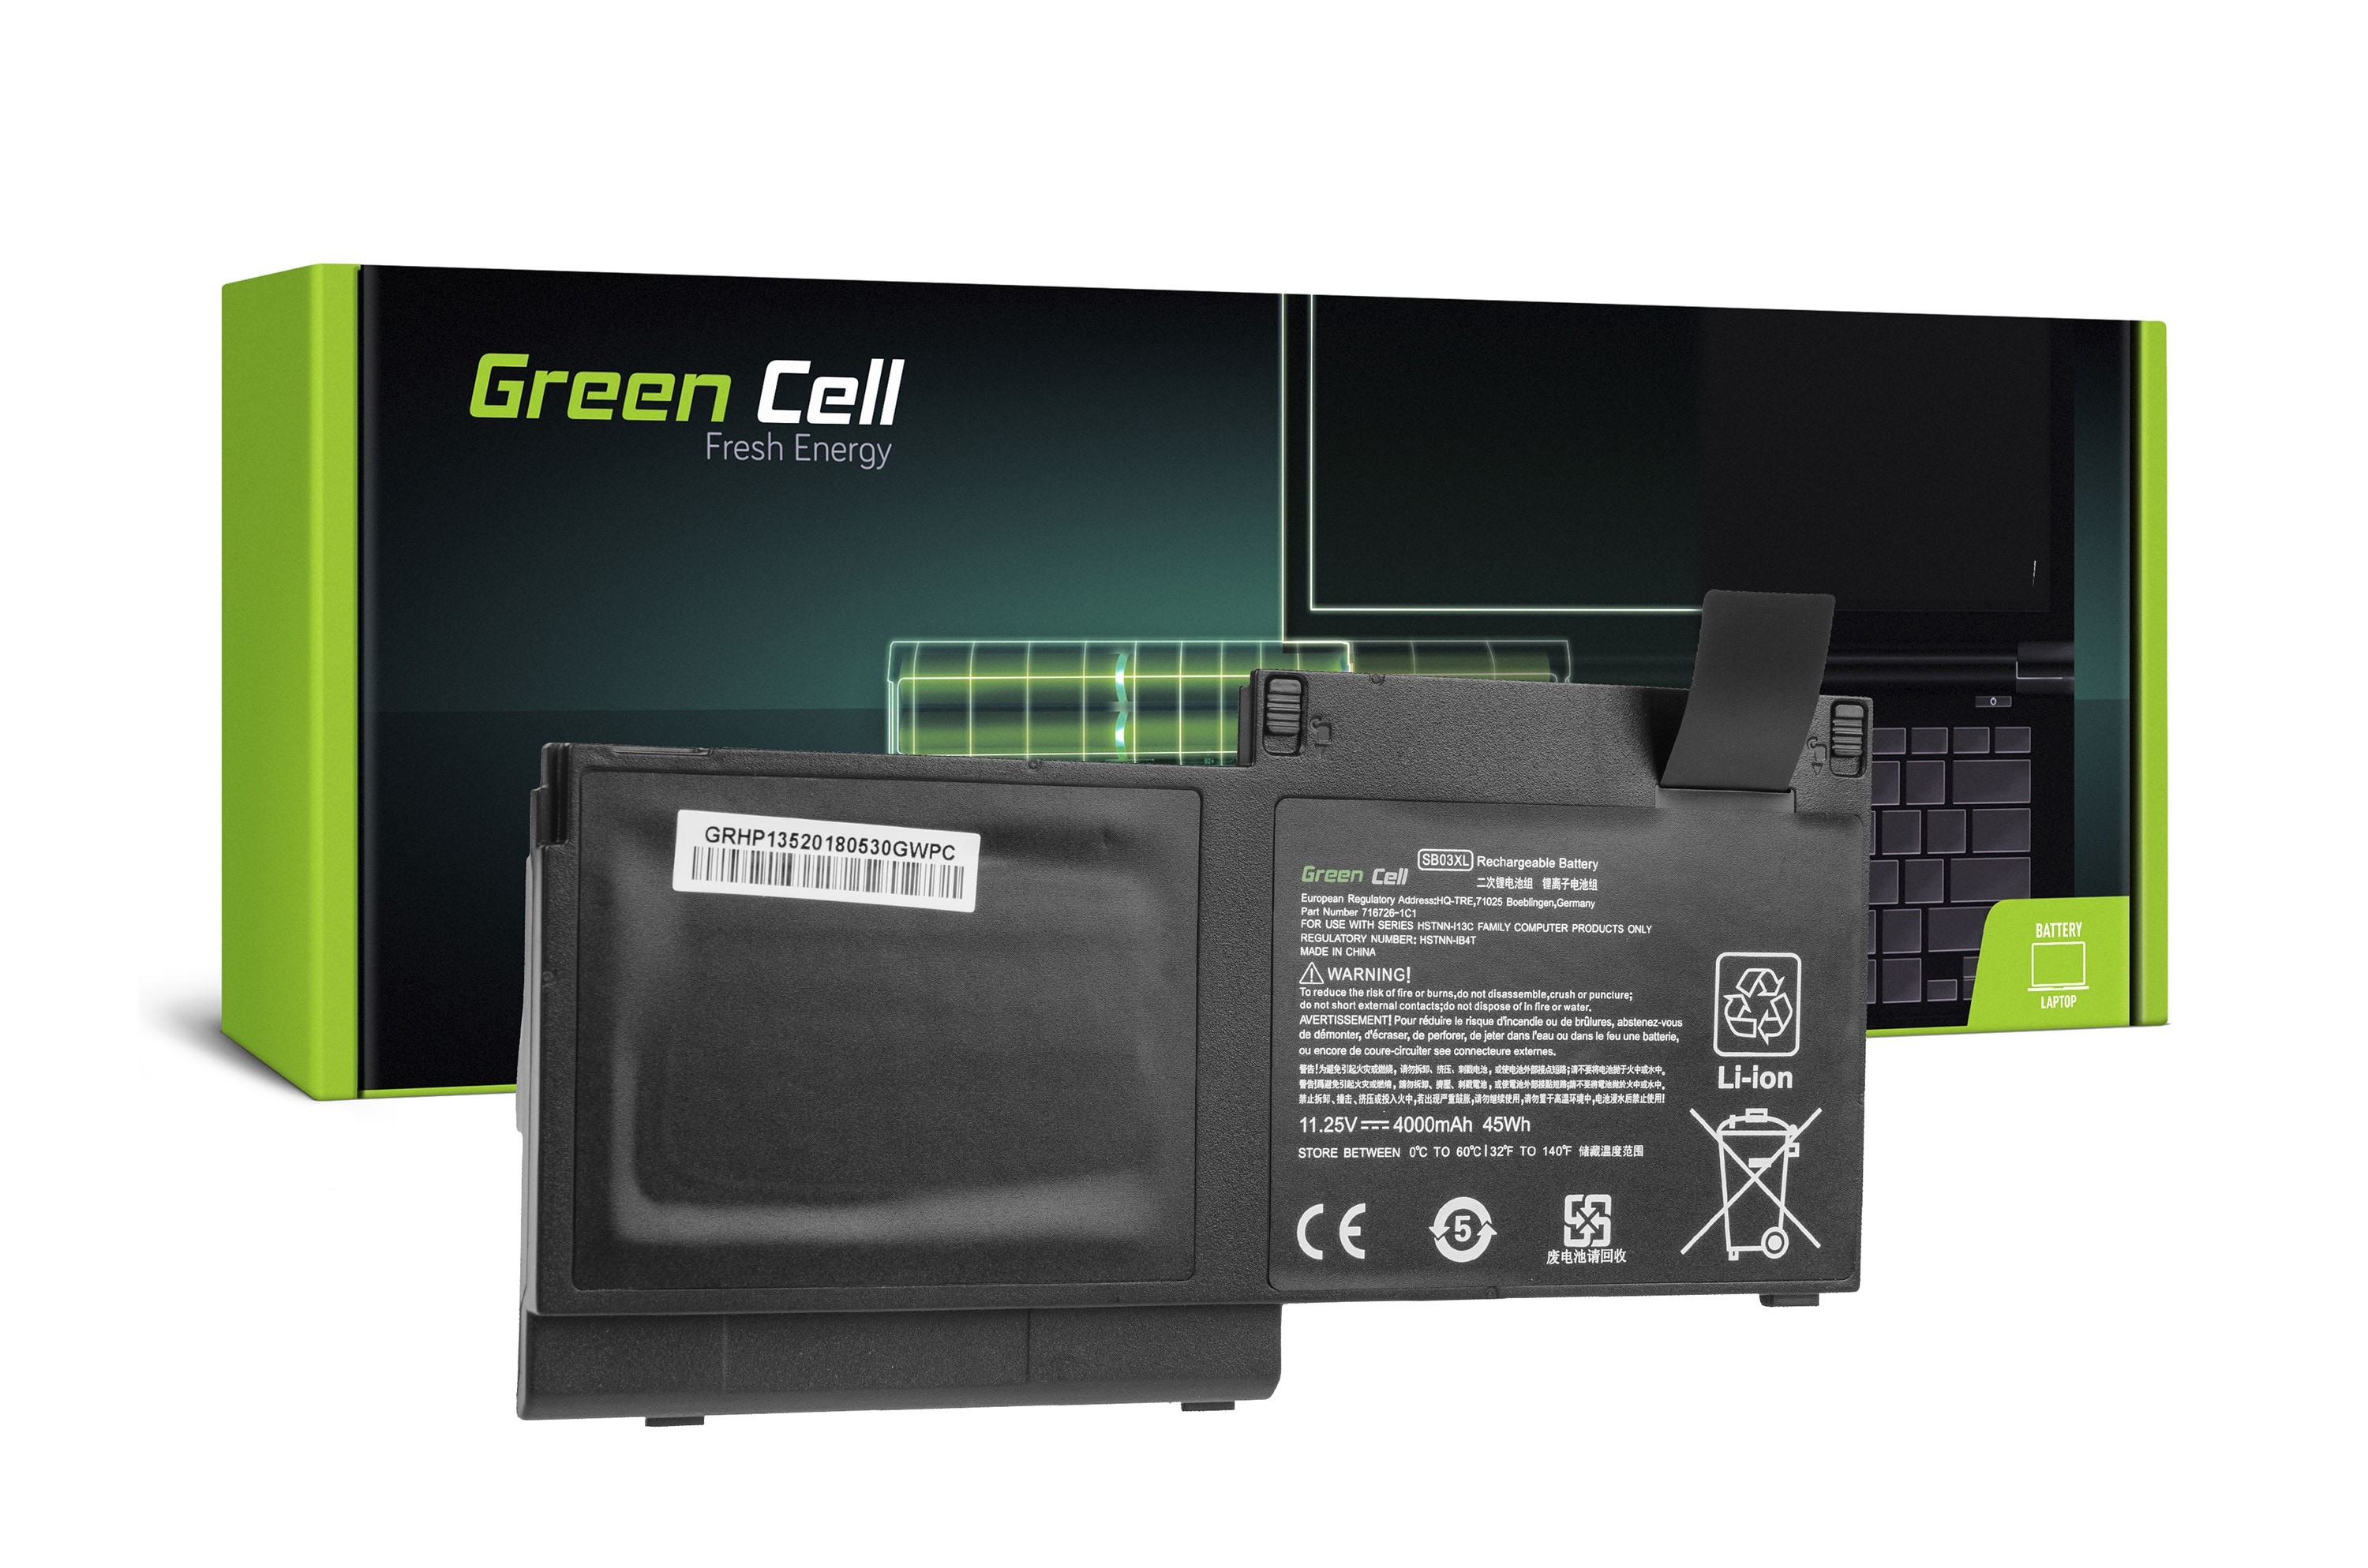 Green Cell laptop batteri til HP EliteBook 720 G1 G2 820 G1 G2 / 11,25V 4000mAh